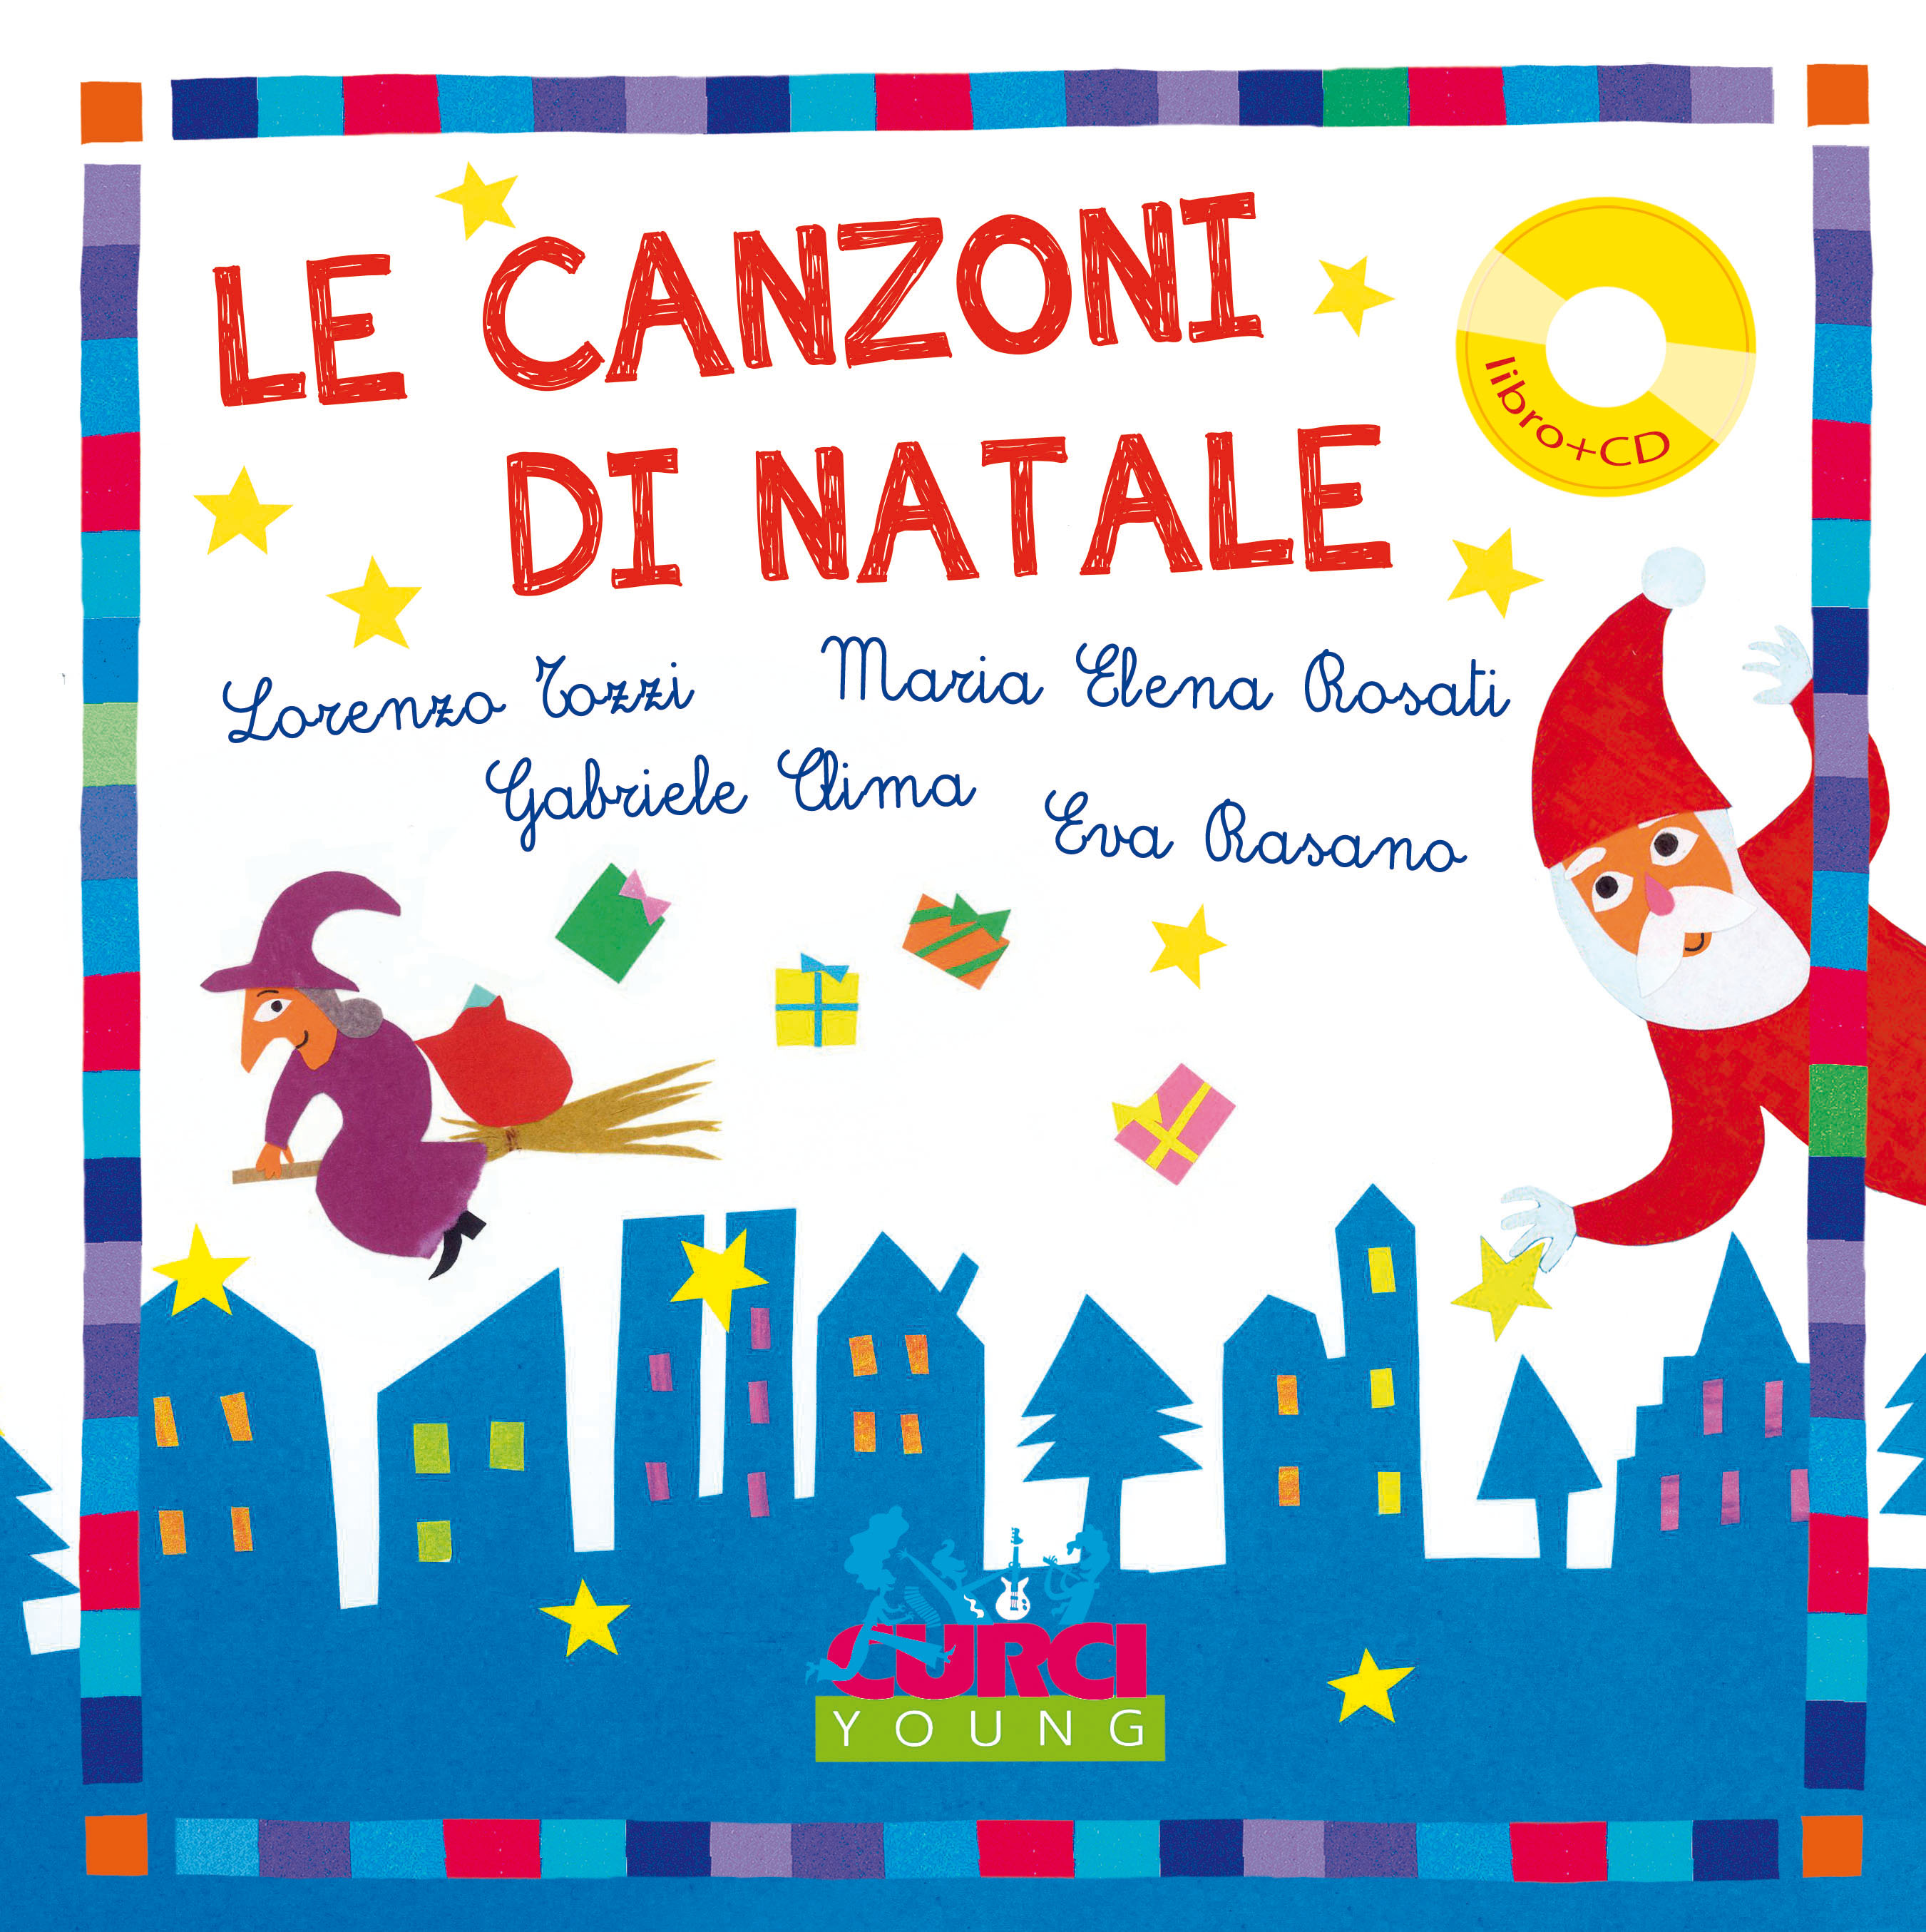 Canzoni Di Natale Karaoke.Le Canzoni Di Natale Edizioni Curci Catalogo 011947ec